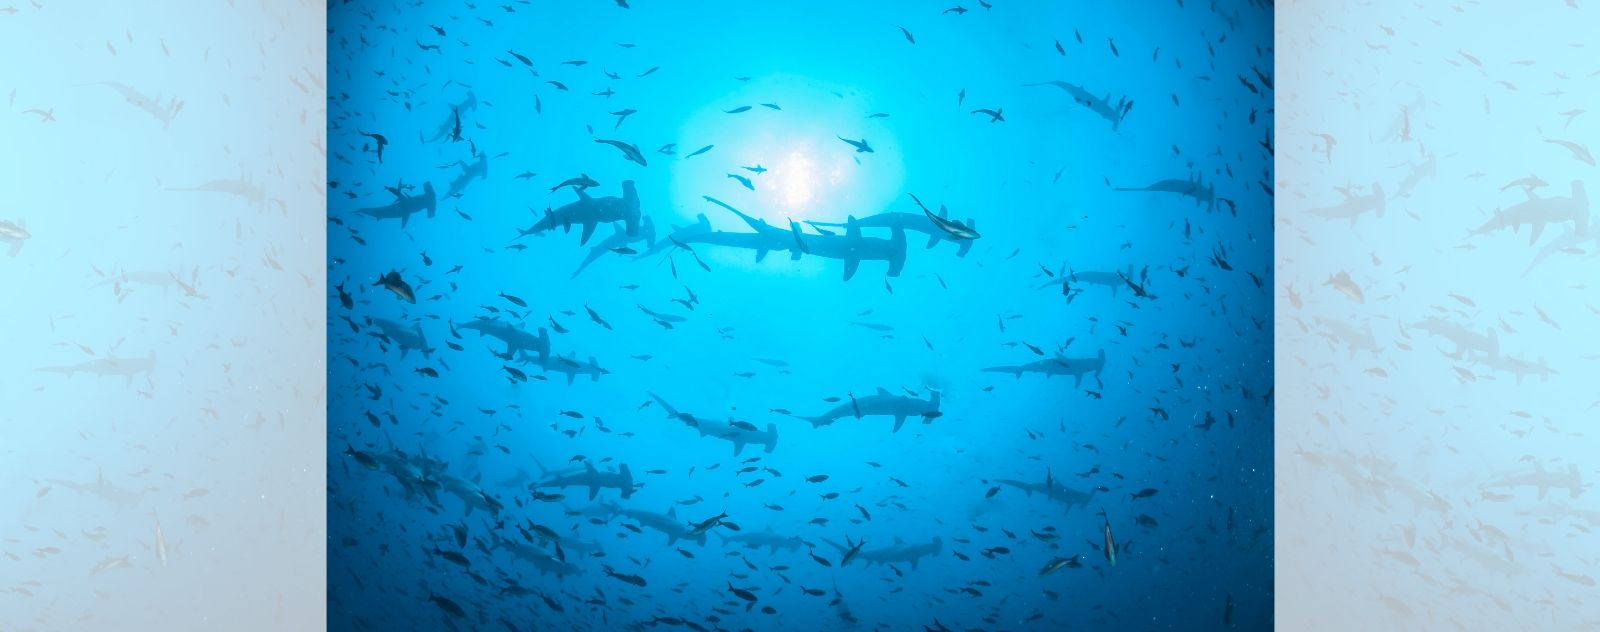 Grupo de tiburones martillo